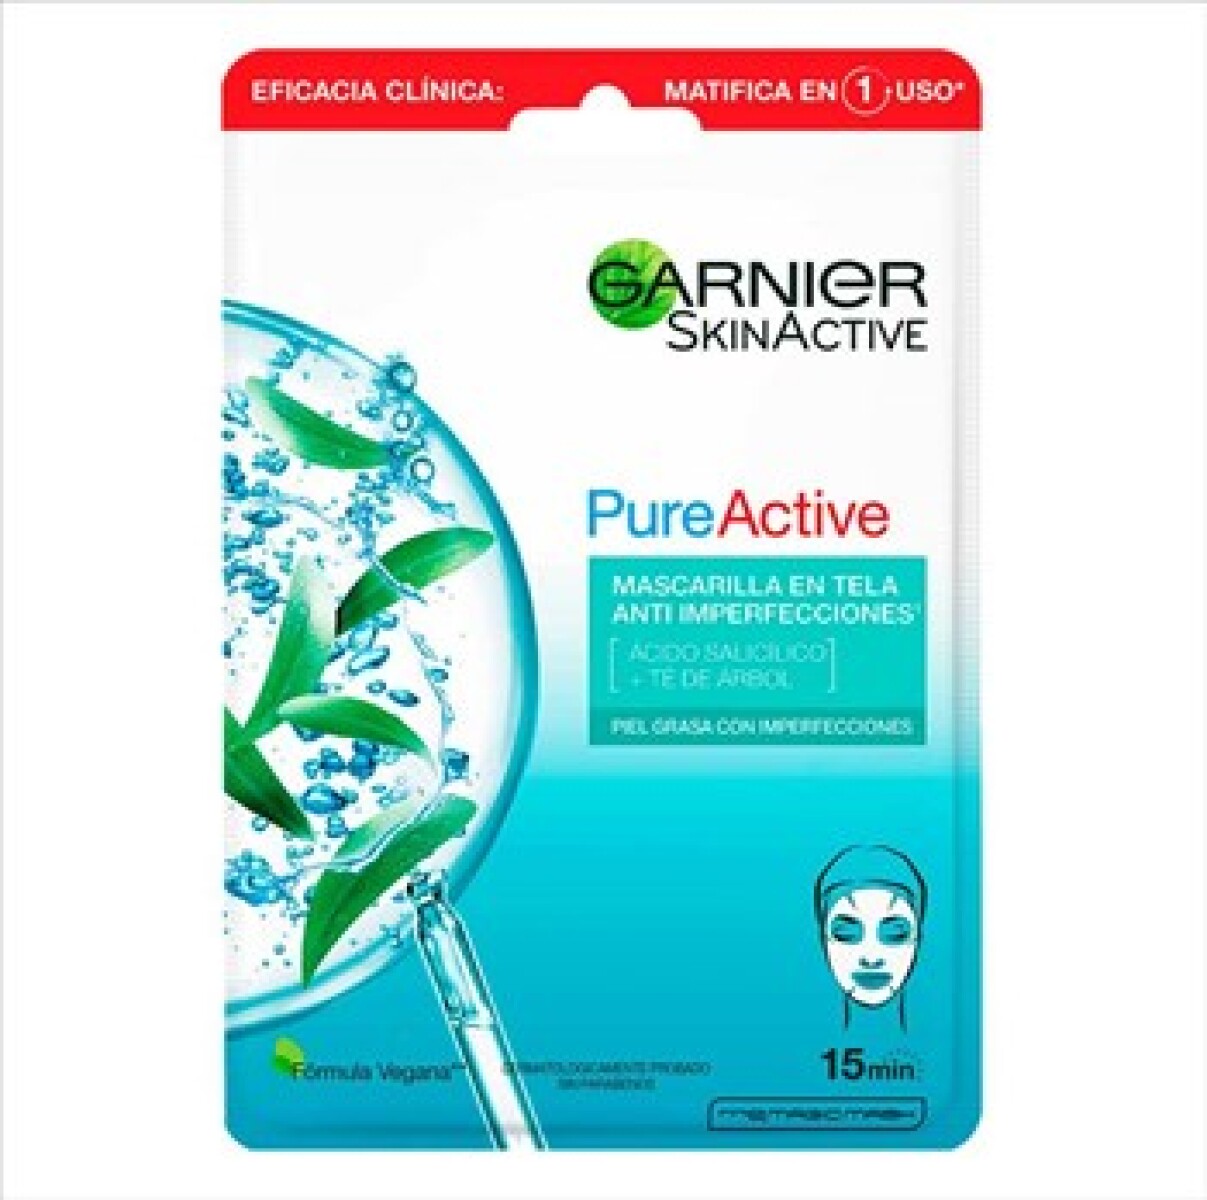 Garnier Pure Active Mascarilla En Tela Anti Imperfecciones 15min 